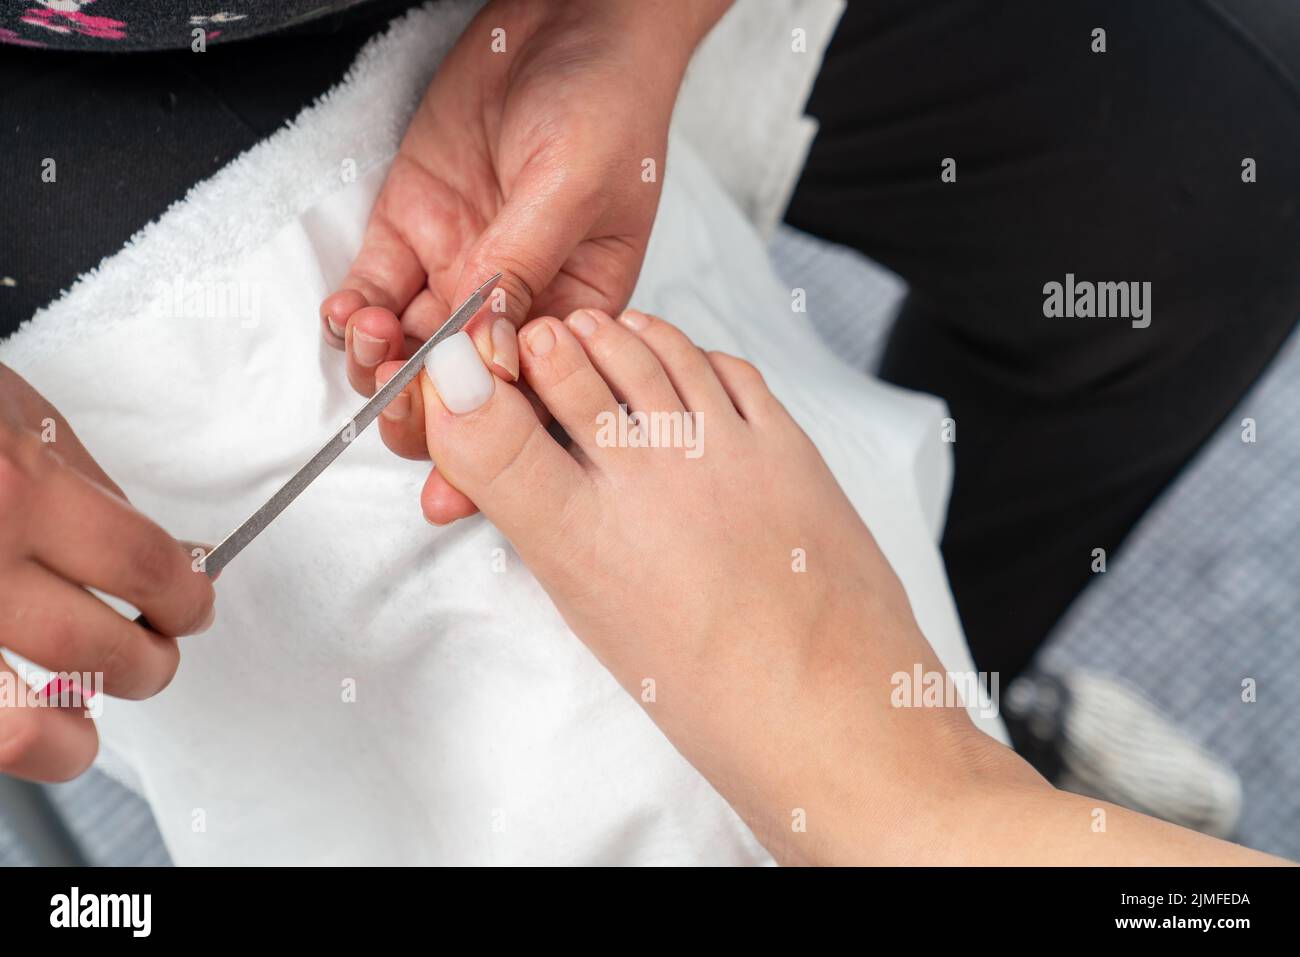 Foto de cerca de la presentación de uñas de los pies. La mujer recibe un tratamiento de pedicura profesional en el salón de belleza. Belleza y concepto cosmético. Fotografía de alta calidad Foto de stock